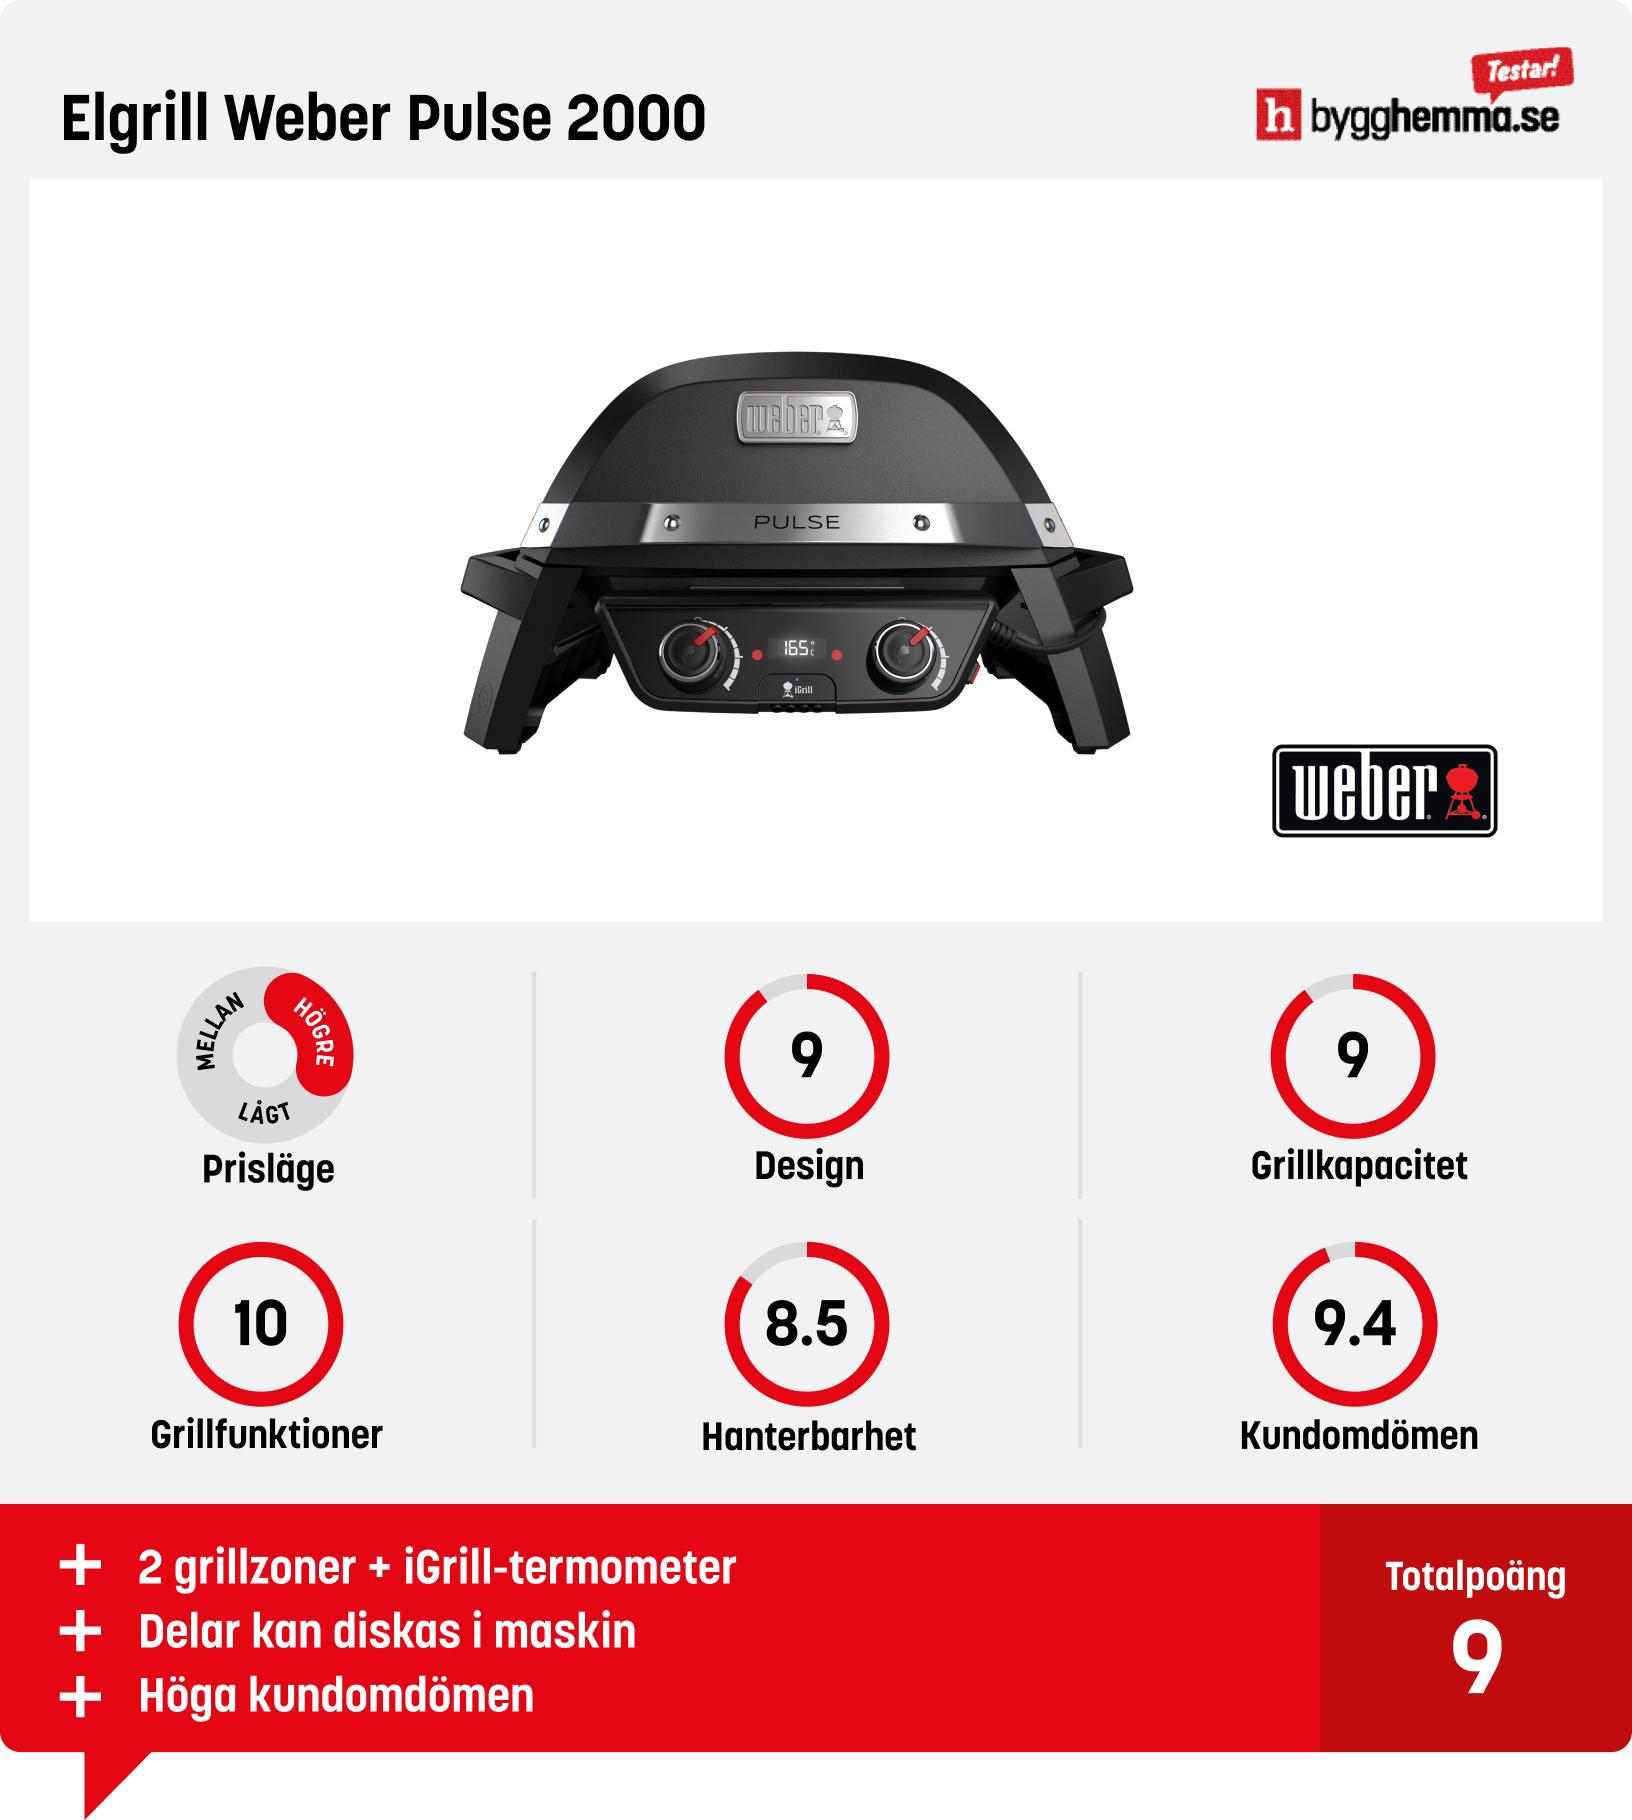 Elgrill bäst i test - Elgrill Weber Pulse 2000